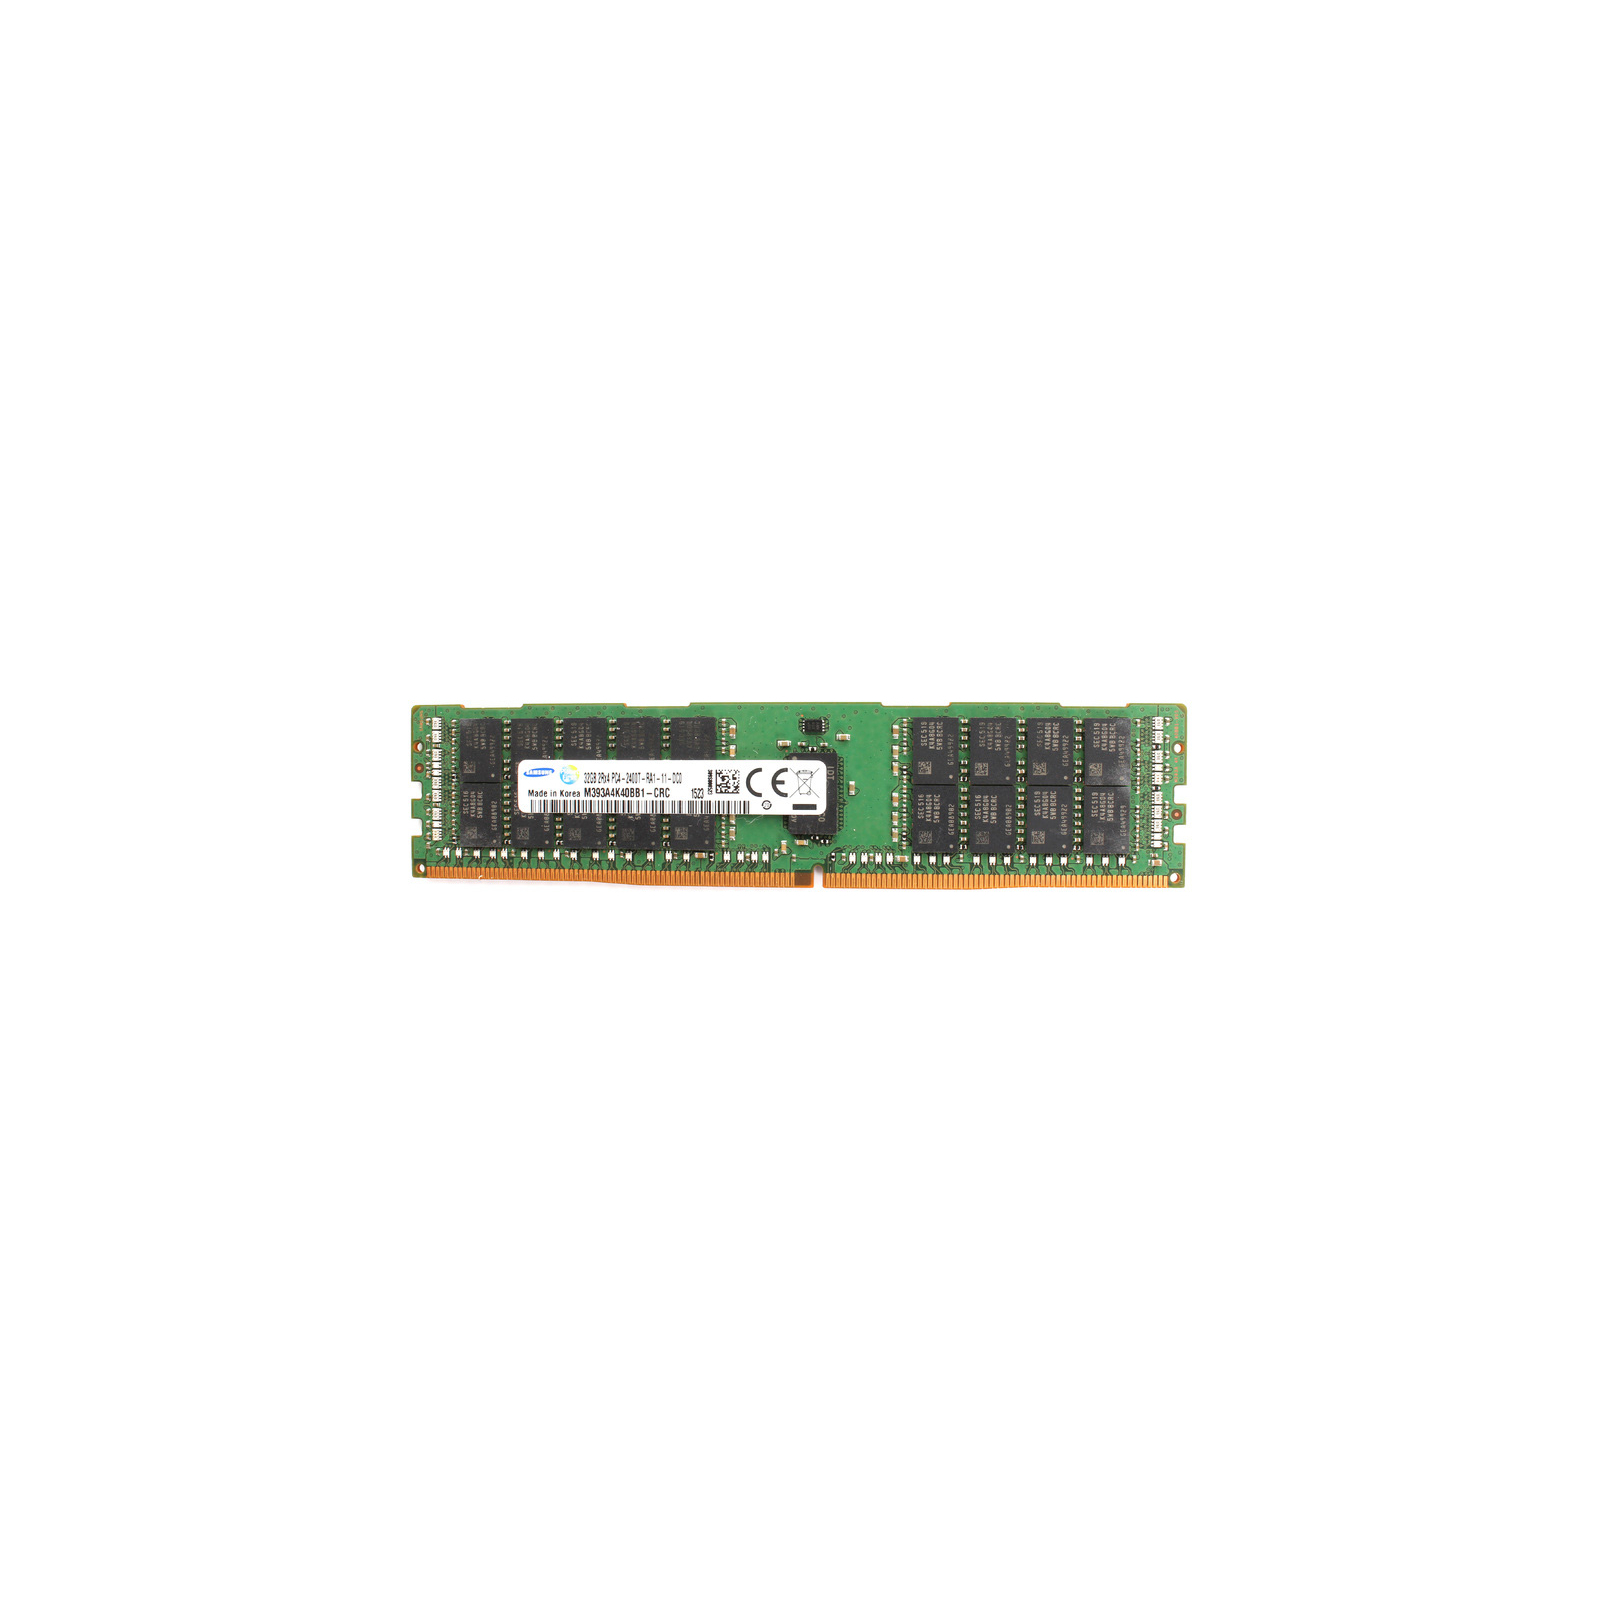 Модуль пам'яті для сервера DDR4 32GB ECC RDIMM 2400MHz 2Rx4 1.2V CL17 Samsung (M393A4K40BB1-CRC)